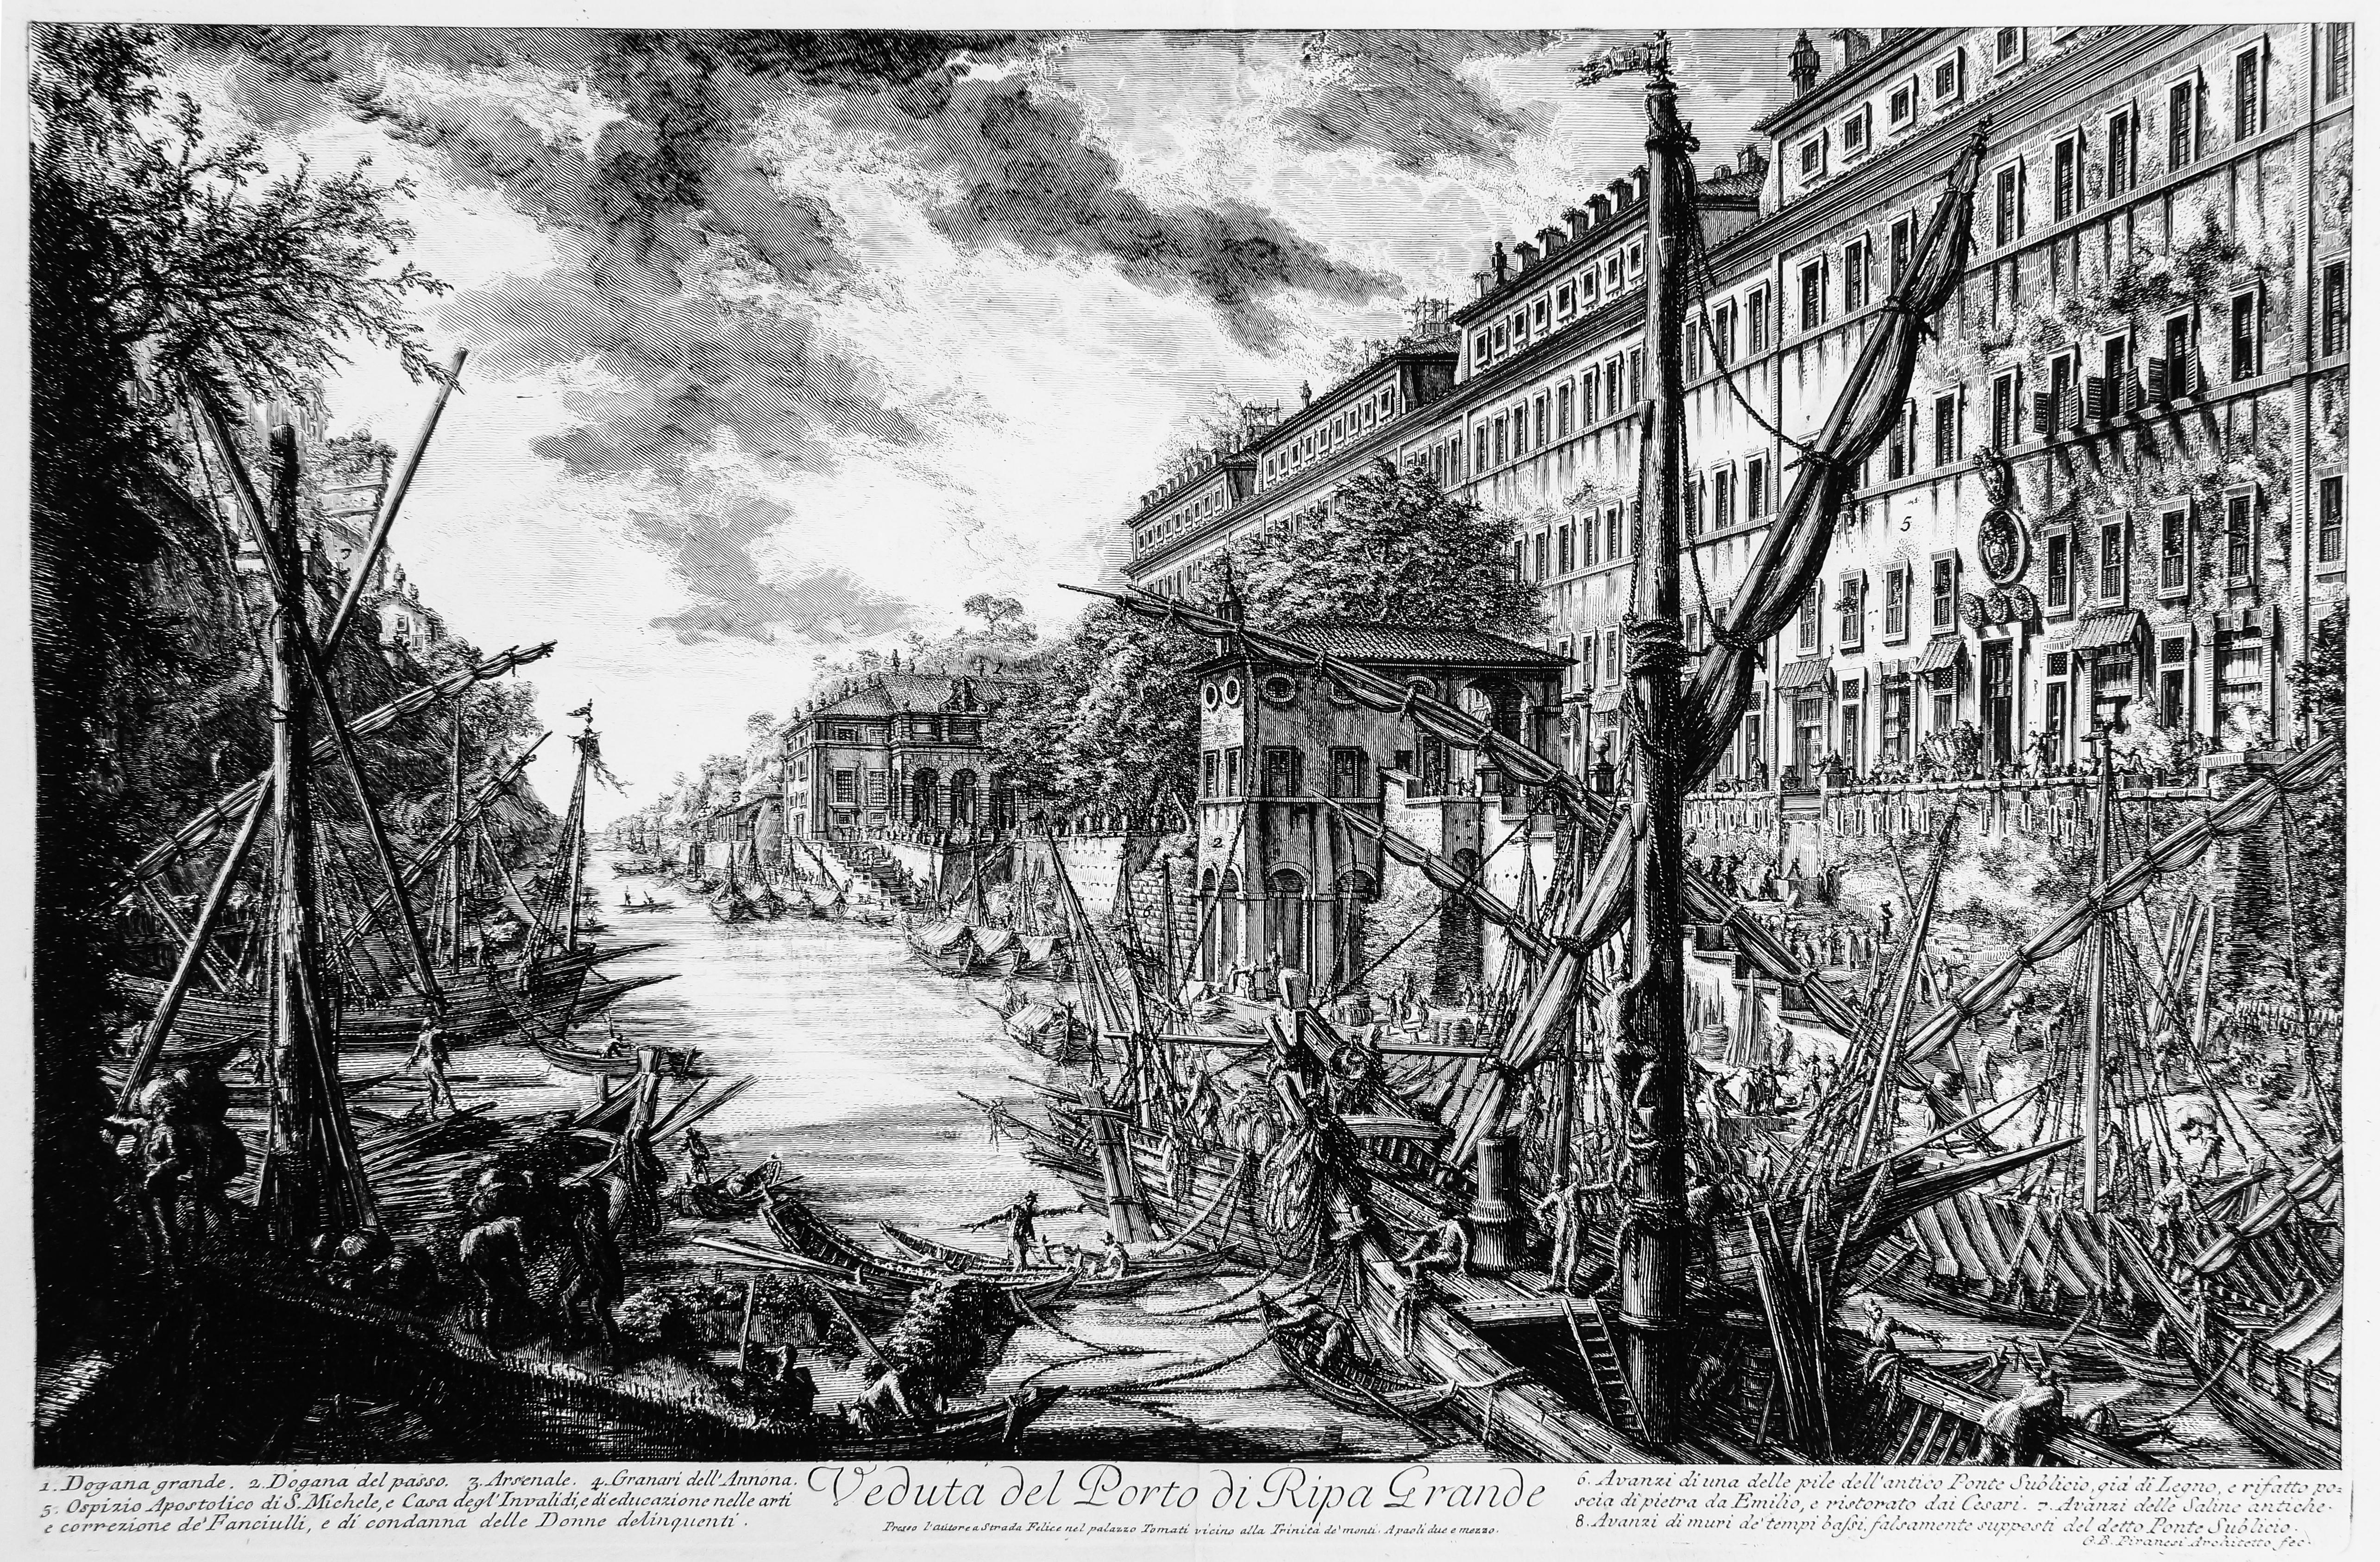 Giovanni Battista Piranesi Figurative Print - Veduta del Porto di Ripa Grande - View of the Port of Ripa Grande - 1753